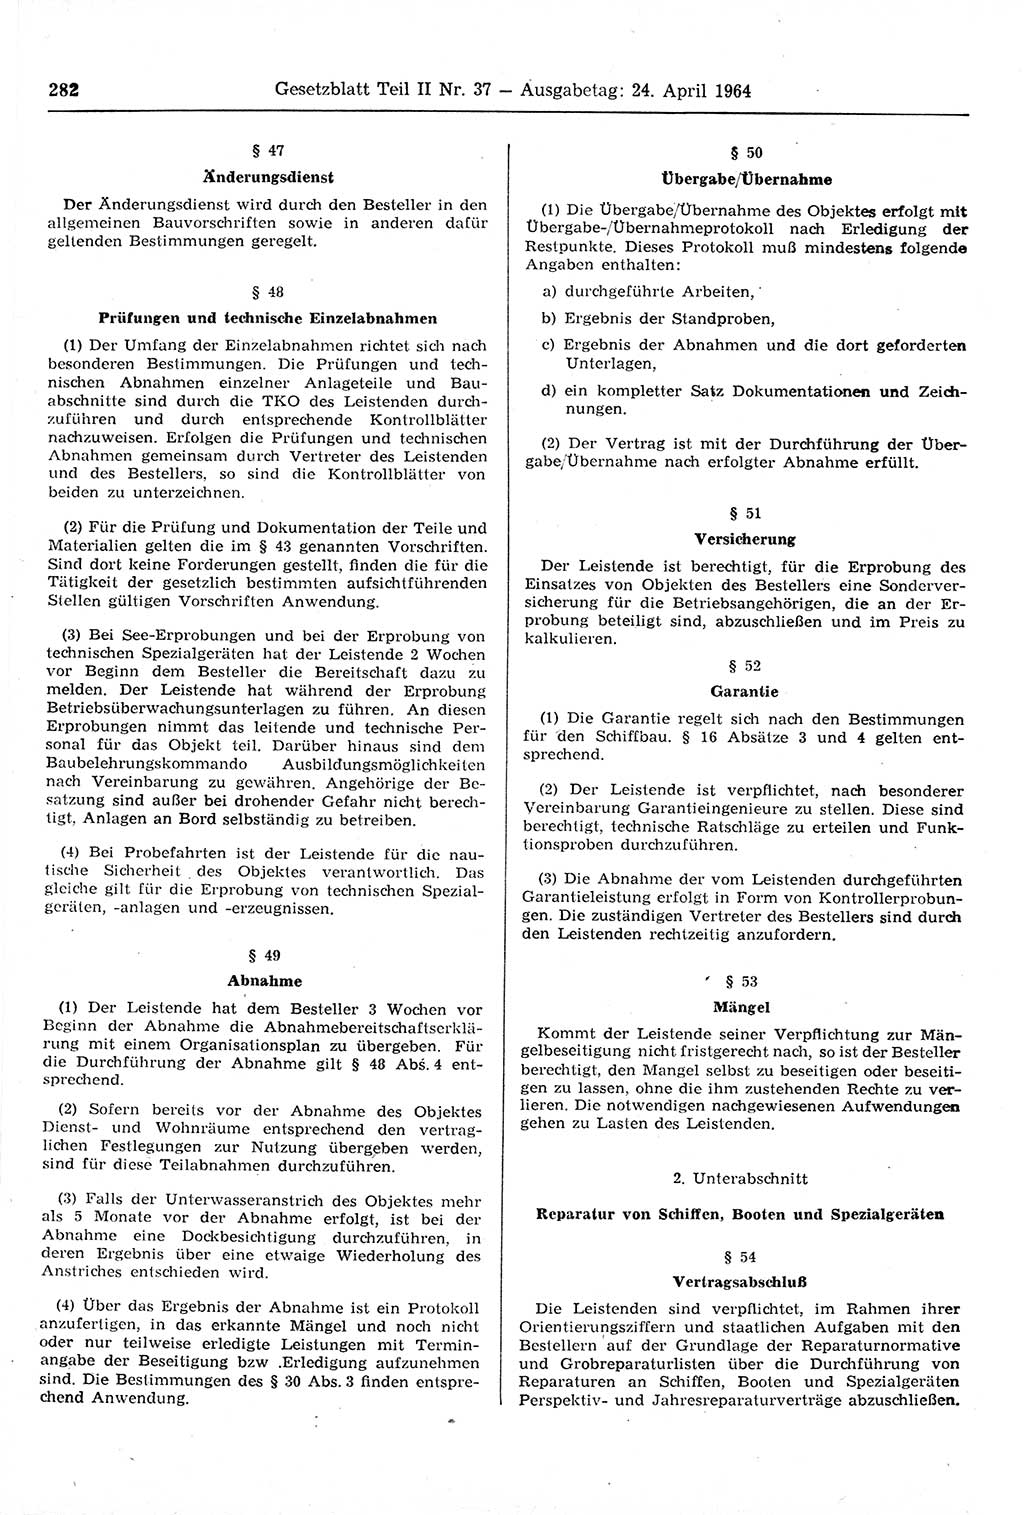 Gesetzblatt (GBl.) der Deutschen Demokratischen Republik (DDR) Teil ⅠⅠ 1964, Seite 282 (GBl. DDR ⅠⅠ 1964, S. 282)